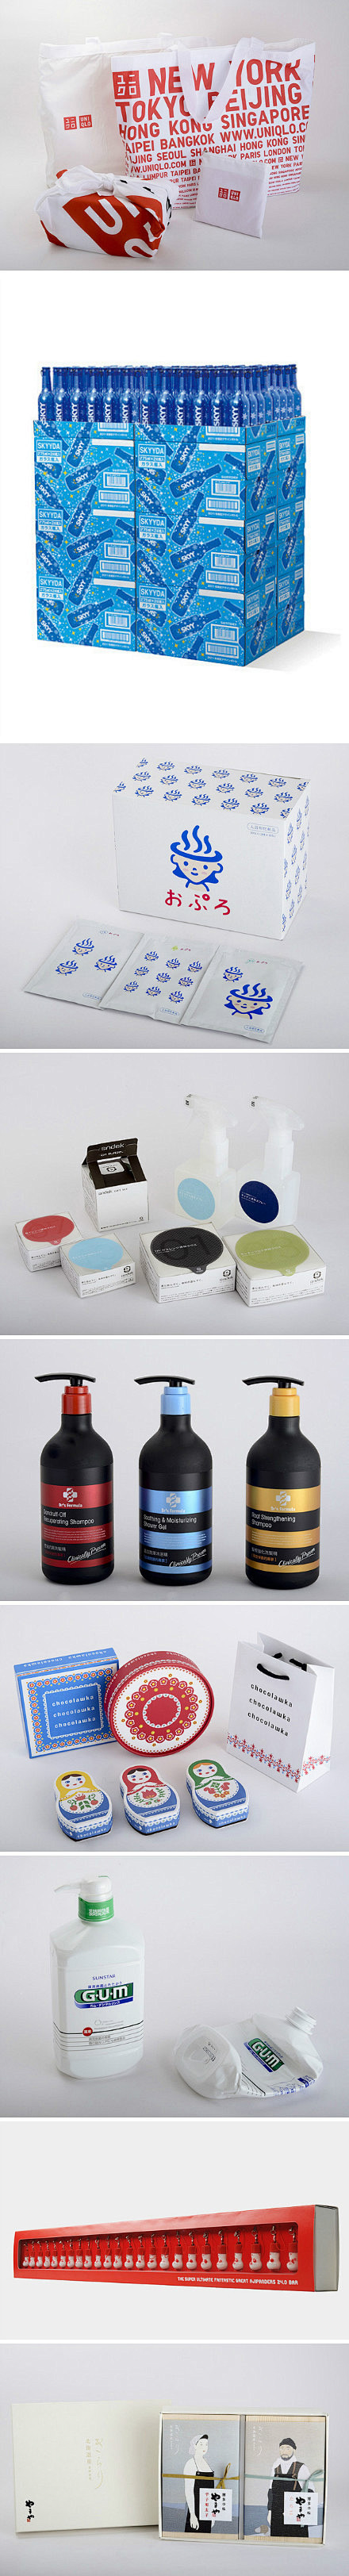 2013日本包装设计奖得奖作品 更多ht...